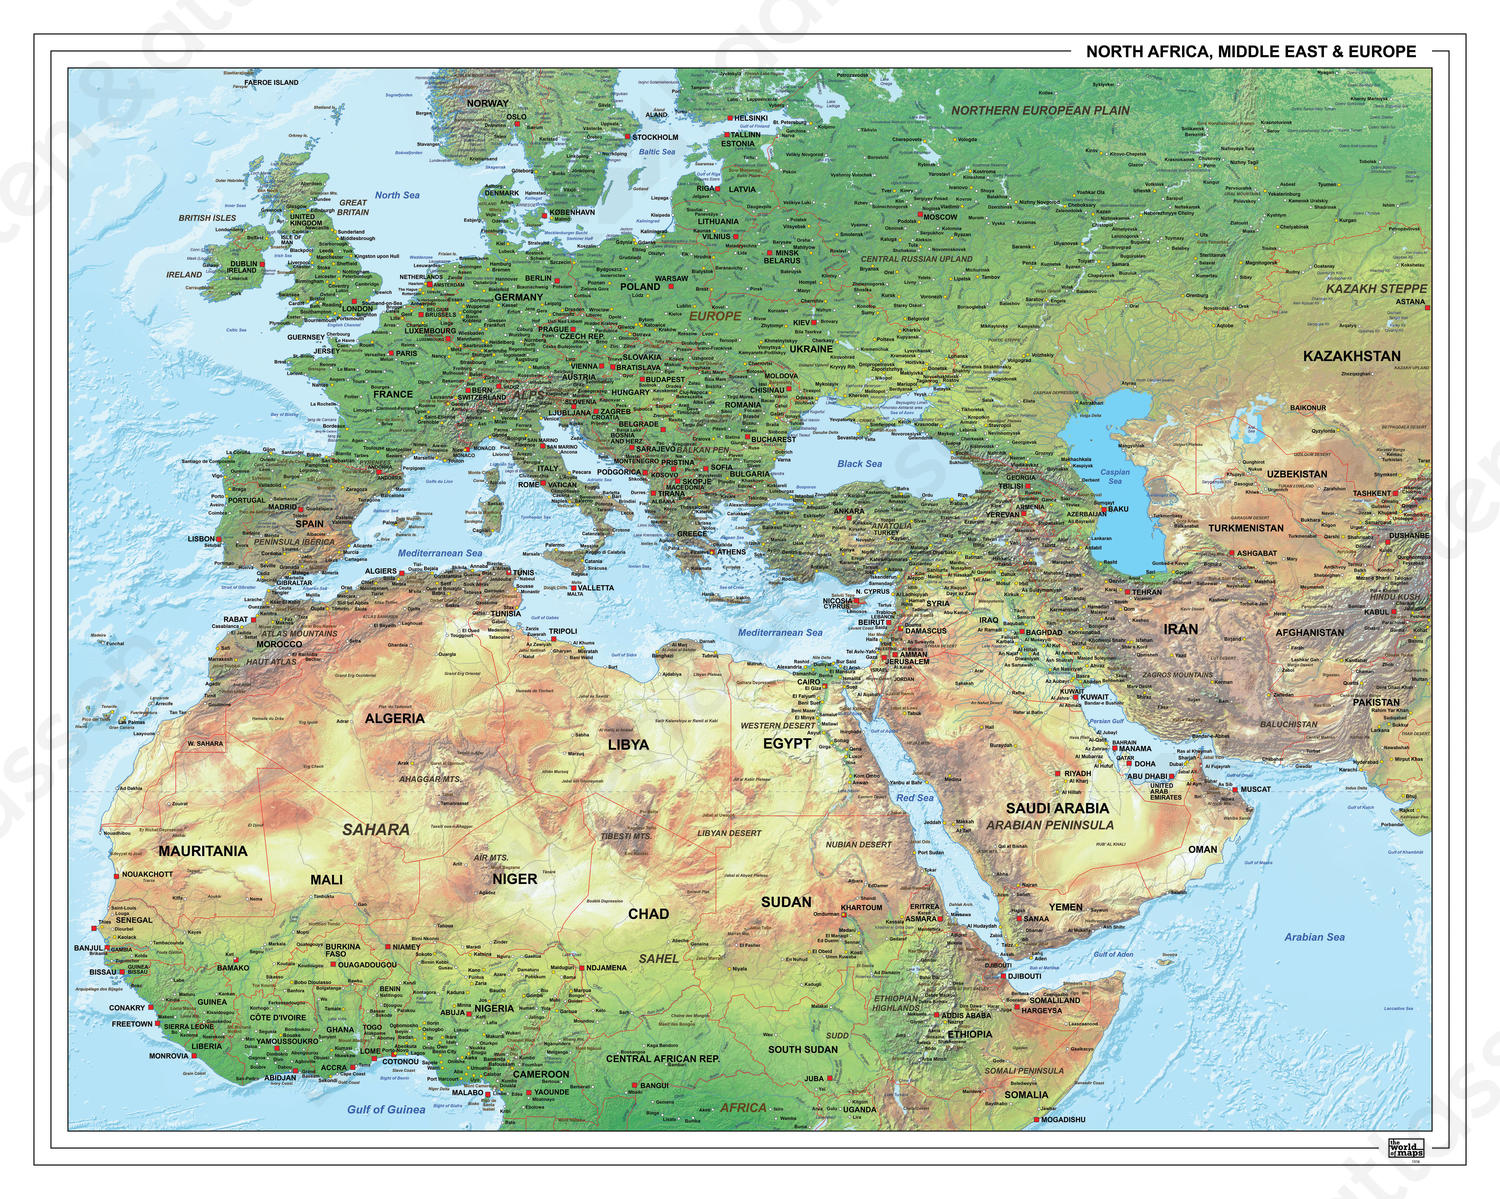 Europa Afrika Midden-Oosten Natuurkundige kaart 